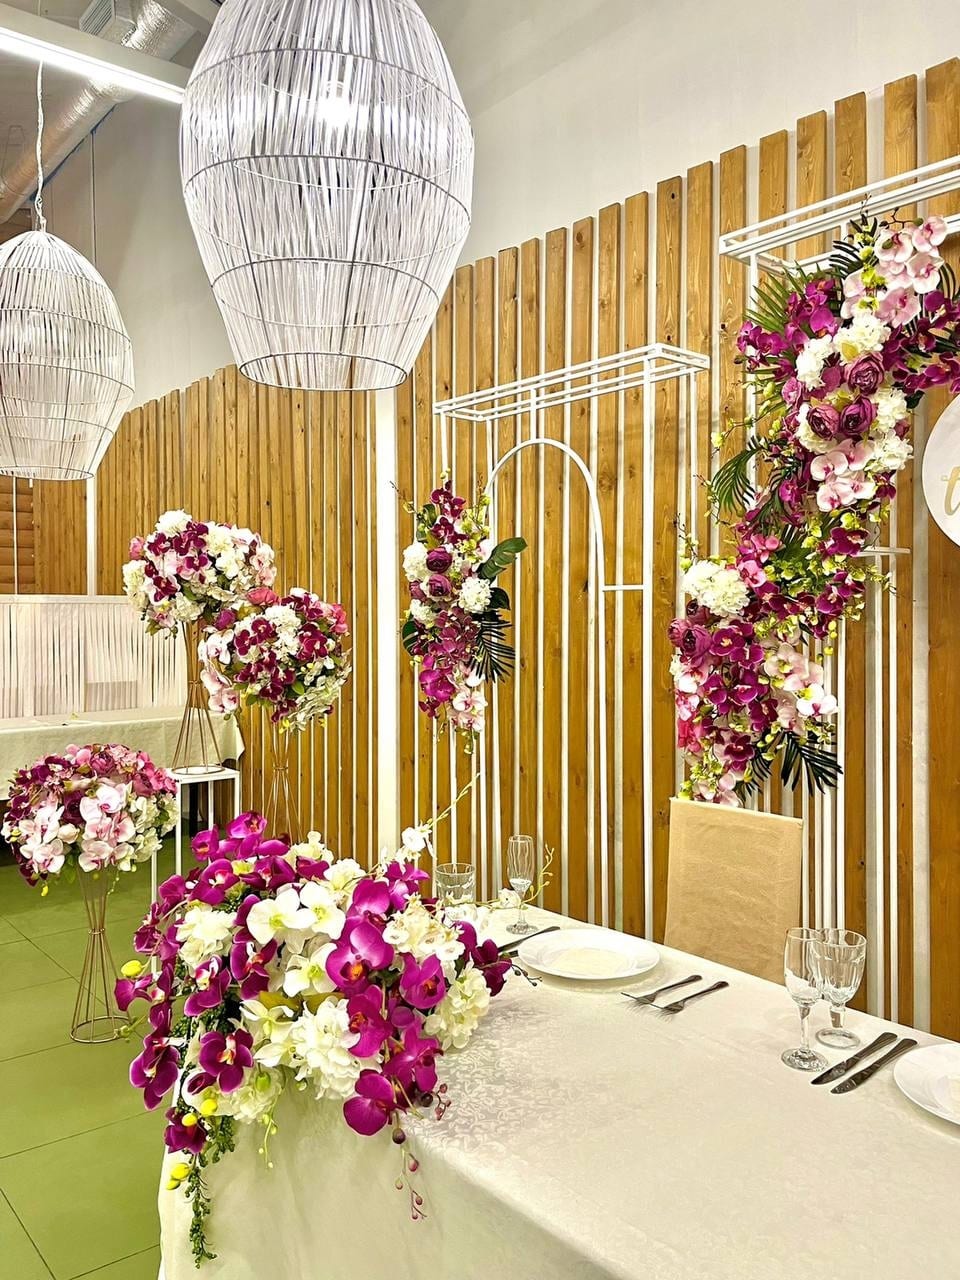 Костромское кафе «Валенок» предлагает к аренде свадебные арки и дарит подарки молодожёнам